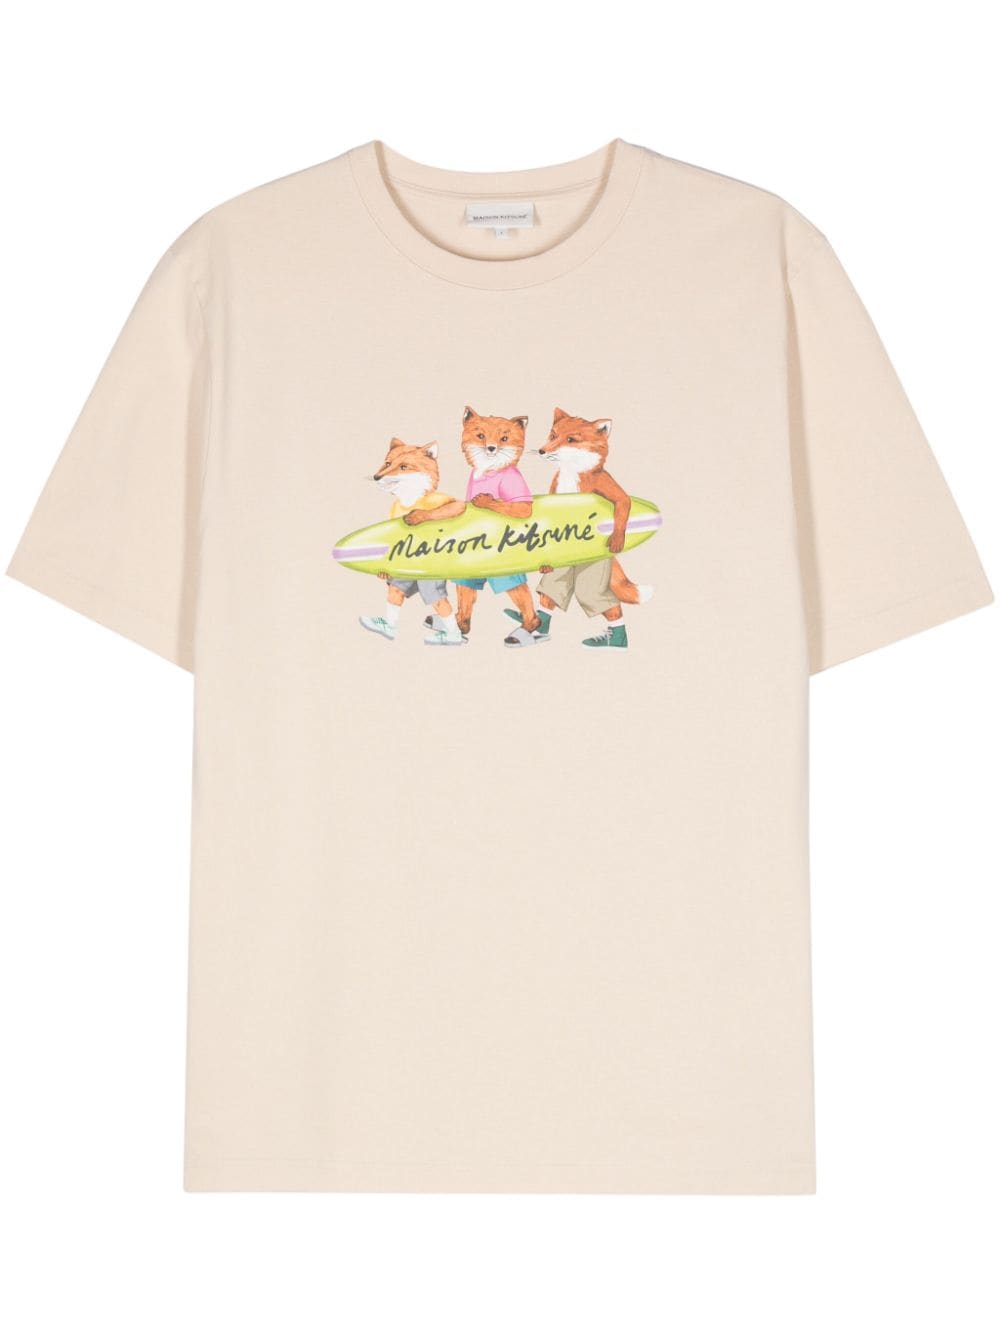 T-shirt surfing foxes beige